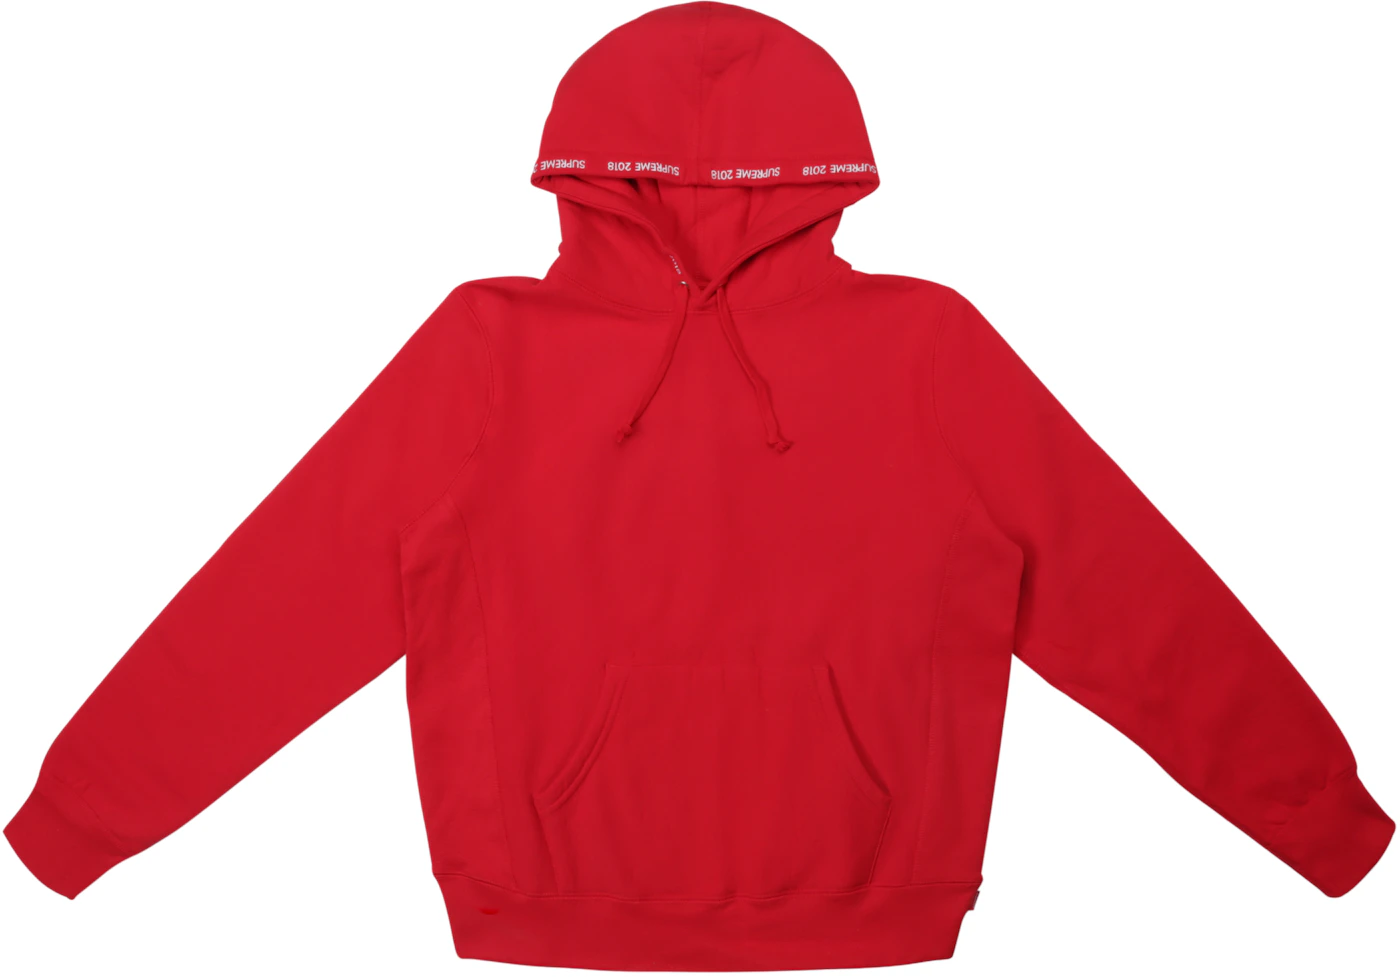 Red Hoodie - 12 For Sale on 1stDibs  supreme hoodie dhgate, unknown future  hoodie walmart